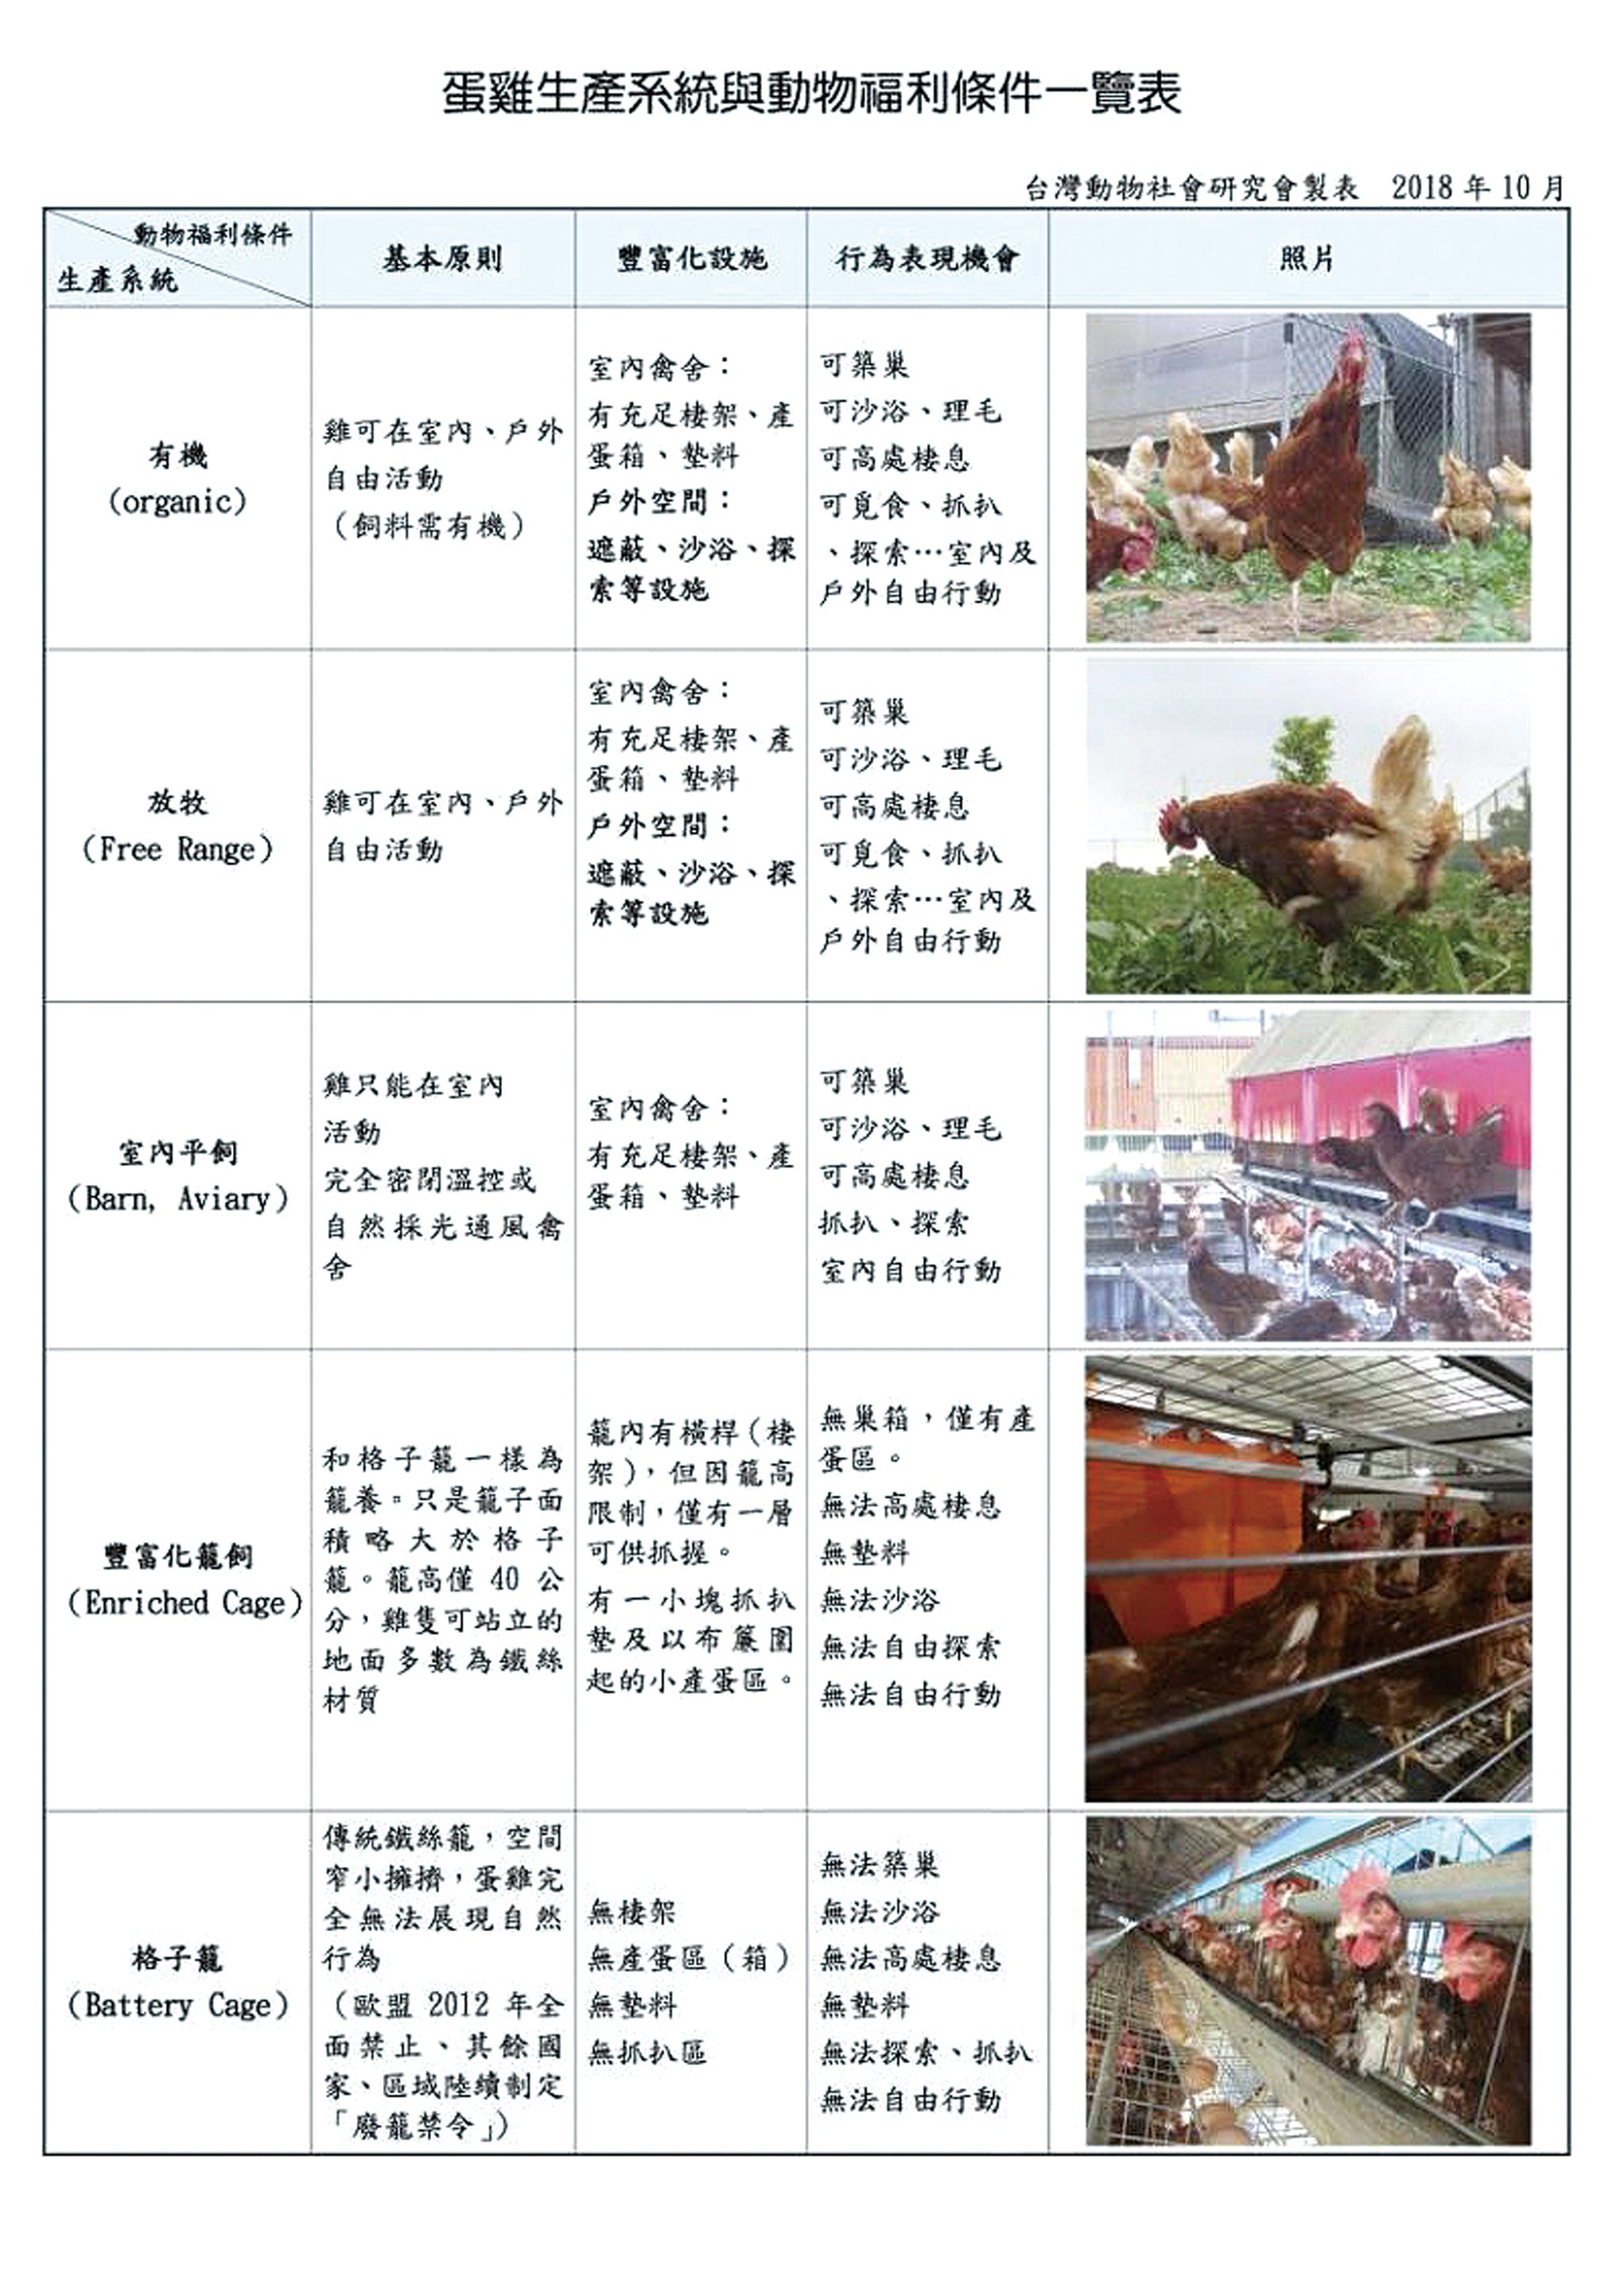 蛋雞生產系統與動物福利條件一覽表。